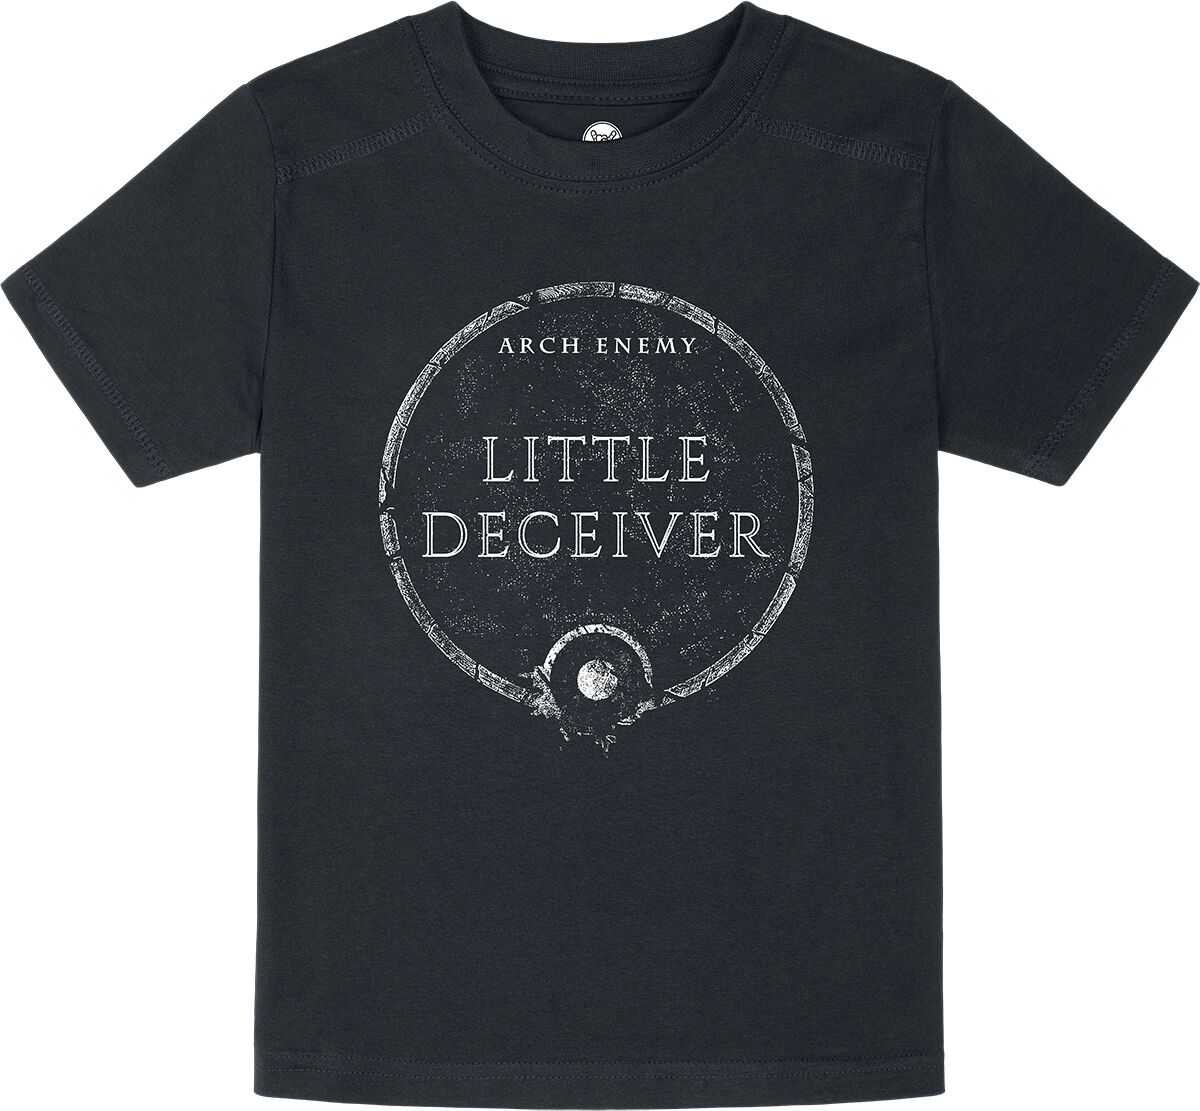 Arch Enemy T-Shirt für Kleinkinder - Metal Kids - Little Deceiver - für Mädchen & Jungen - schwarz  - Lizenziertes Merchandise!